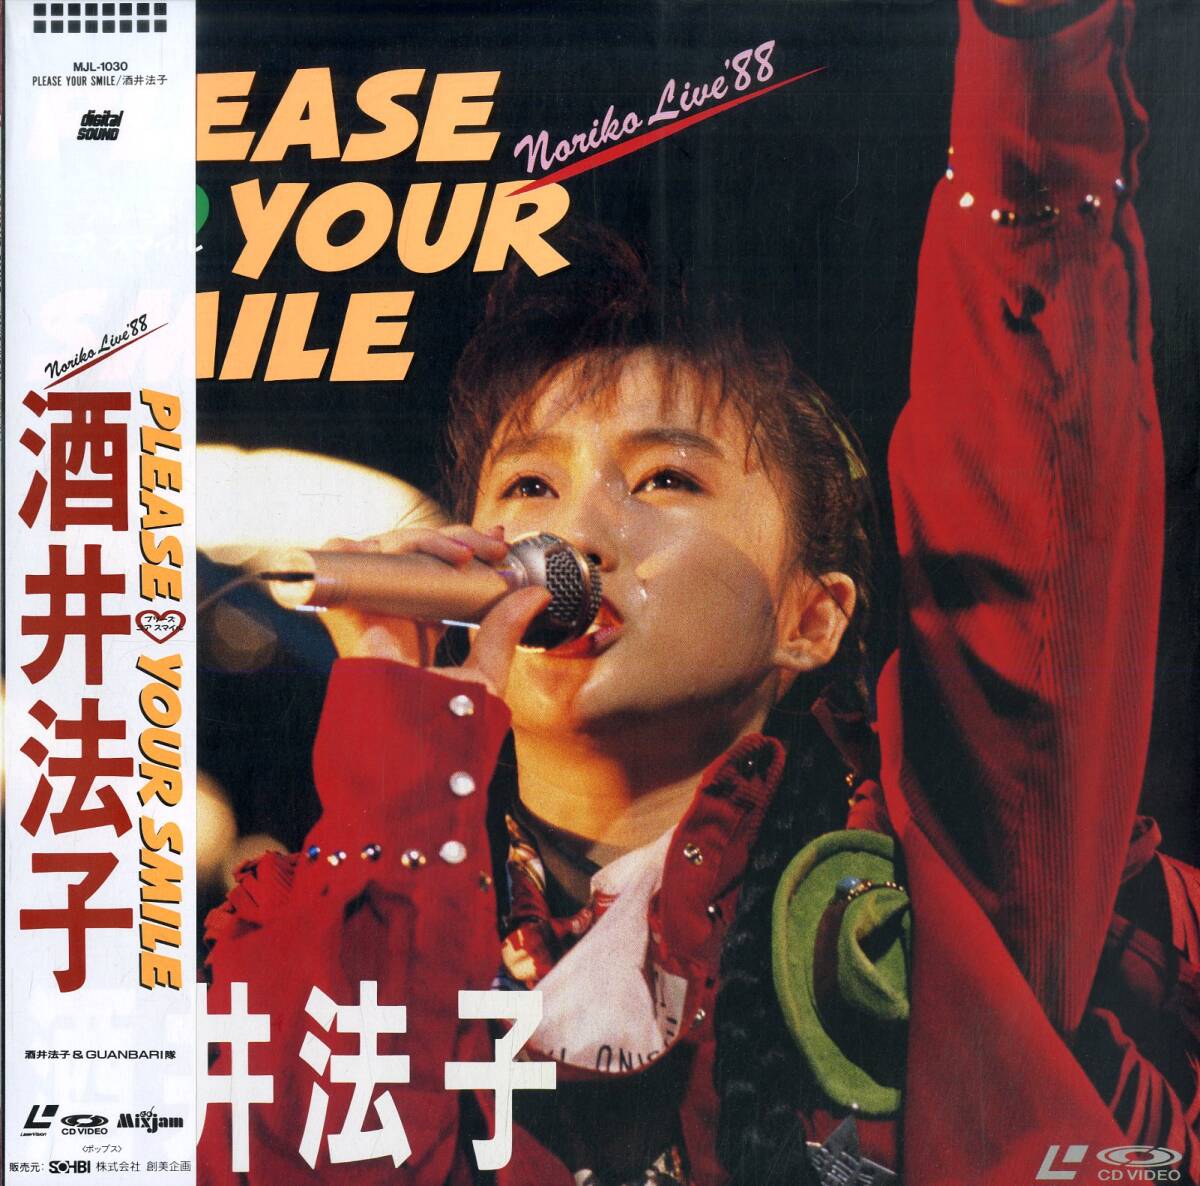 B00182456/LD/酒井法子「Please Your Smile / Norikos Live 88 (1988年・MJL-1030)」_画像1